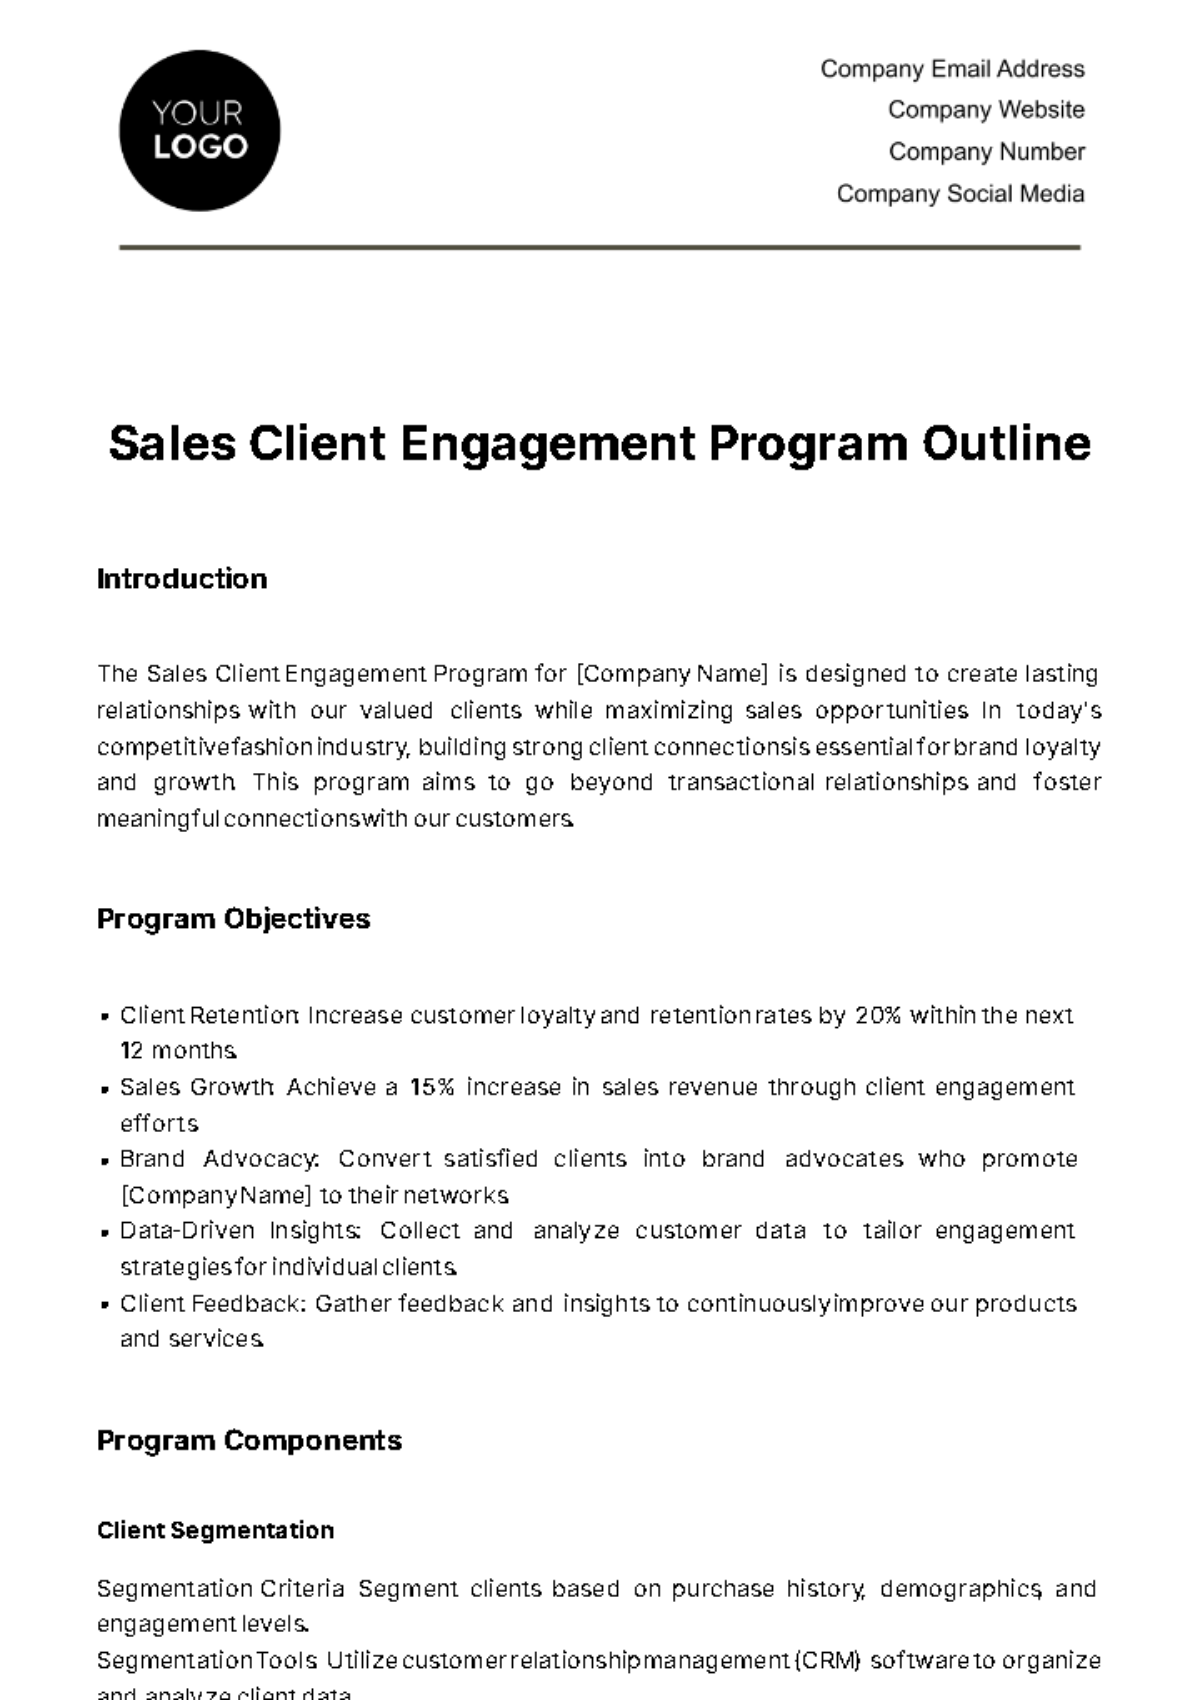 Sales Client Engagement Program Outline Template